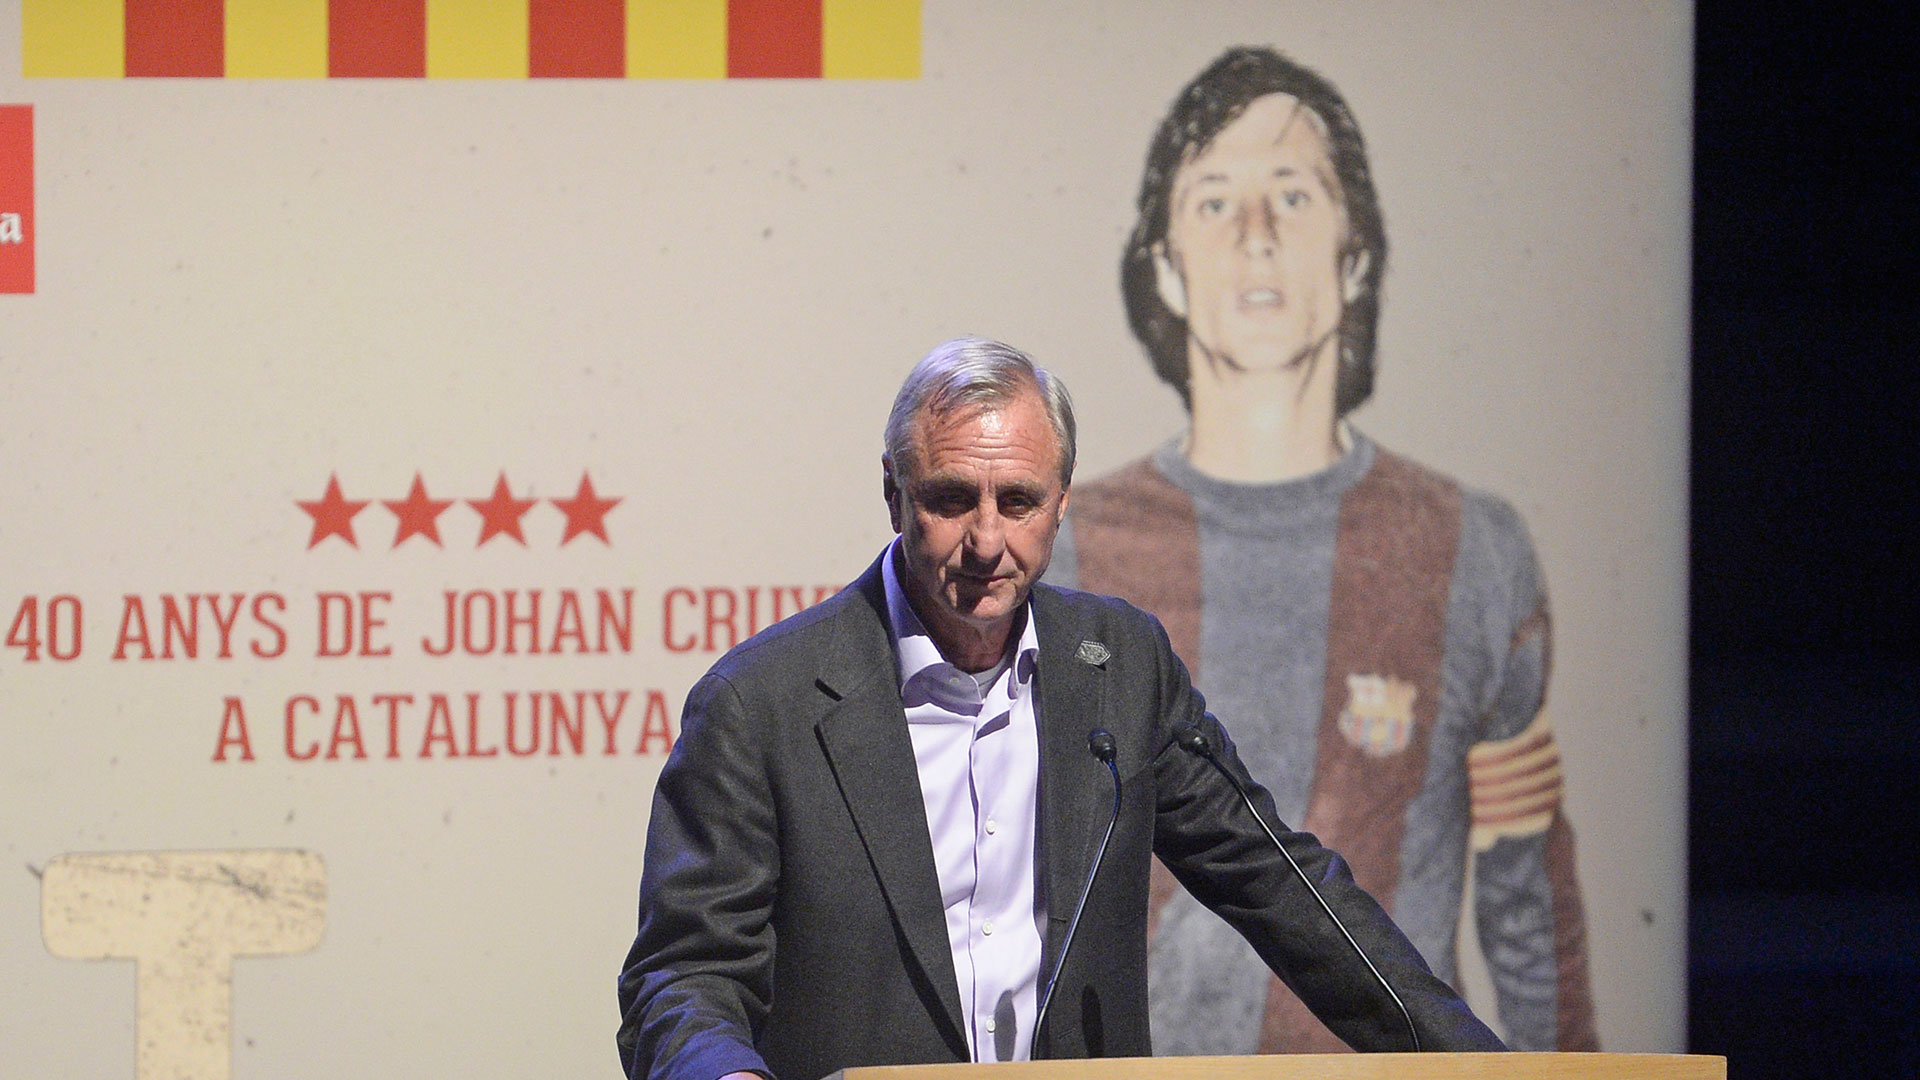 Cruyff pudo celebrar sus 40 años de carrera futbolística. | Foto: Manu Fernandez / AP